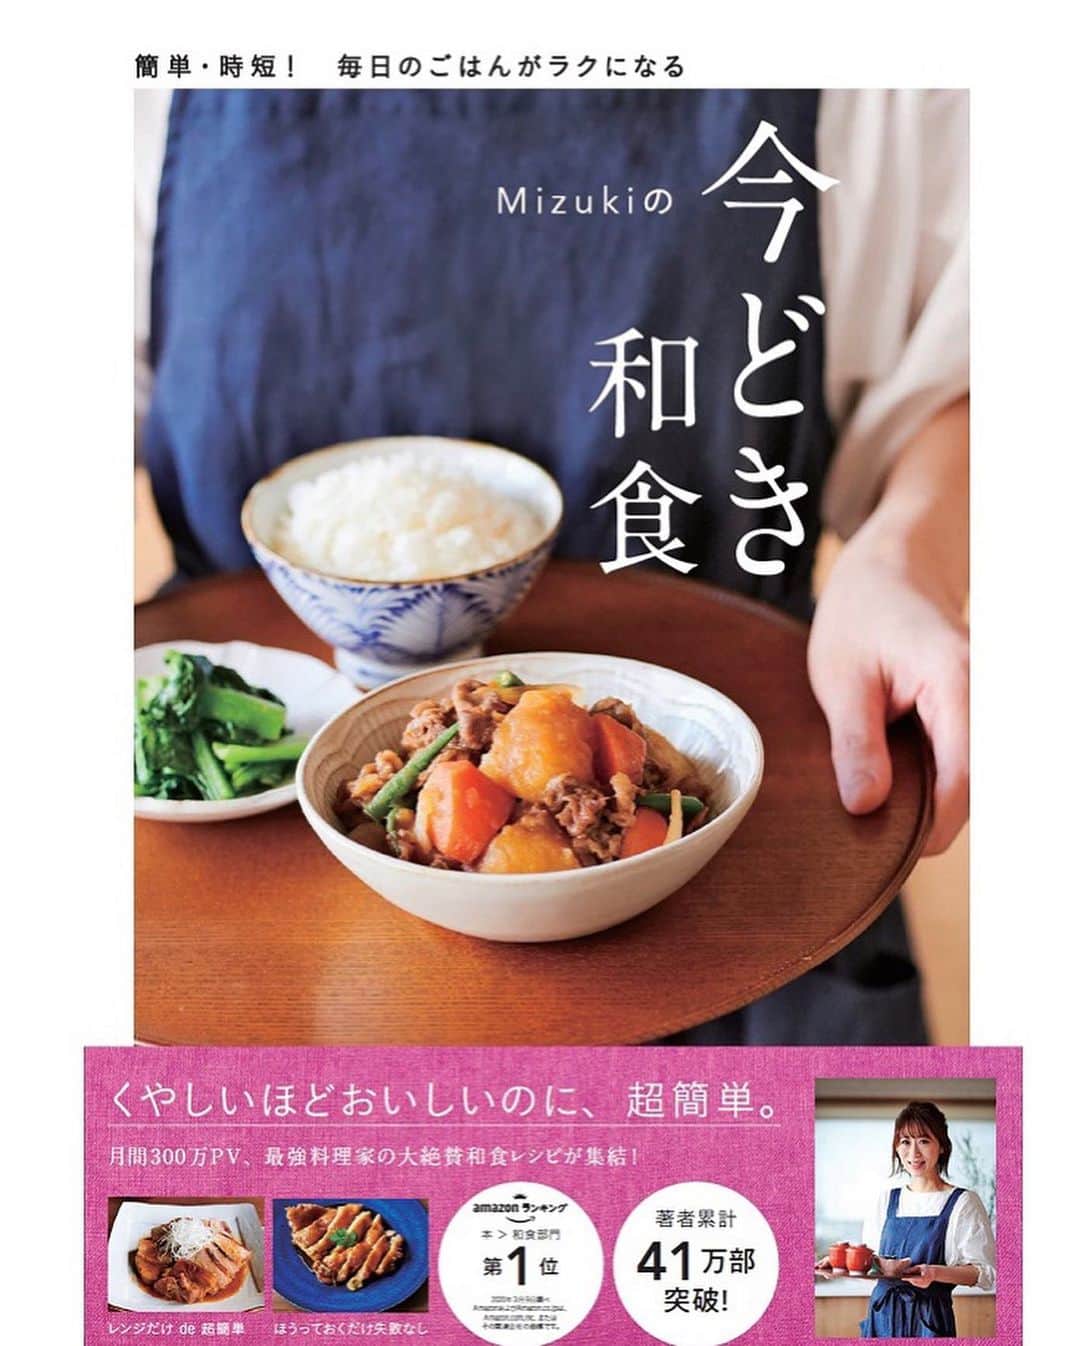 Mizuki【料理ブロガー・簡単レシピ】さんのインスタグラム写真 - (Mizuki【料理ブロガー・簡単レシピ】Instagram)「・﻿ 【#レシピ 】ーーーーーーーーーー﻿ ♡レンチンミートソースドリア♡﻿ ーーーーーーーーーーーーーーーー﻿ ﻿ ﻿ ﻿ おはようございます(*^^*)﻿ ﻿ 今日ご紹介させていただくのは﻿ \ レンチンミートソースドリア /﻿ ﻿ ミートソースはトマト缶不要♩﻿ しかもレンジで一発！！﻿ たっぷりのチーズとごはんにのせて﻿ ドリア風に仕上げました♡﻿ レンジ&トースターだけでできる﻿ 超〜簡単レシピです(*´艸`)﻿ ﻿ 休日ランチにもおすすめなので﻿ よかったらお試し下さいね(*^^*)﻿ ﻿ (レシピ下のキャンペーンのことも﻿ 知っていただけると嬉しいです✨)﻿ ﻿ ﻿ ﻿ ＿＿＿＿＿＿＿＿＿＿＿＿＿＿＿＿＿＿＿＿﻿ 【2人分】﻿ ●合いびき肉...150g﻿ ●玉ねぎ(みじん切り)...1/4個﻿ ●ケチャップ...大3﻿ ●醤油...大1/2﻿ ●コンソメ・薄力粉...各小1/2﻿ ごはん...2人分﻿ ピザ用チーズ...60g﻿ (あれば)パセリ...適量﻿ ﻿ 1.耐熱ボウルに●を入れてよく混ぜる。ふんわりラップをかけ、600Wのレンジで6分加熱して混ぜる。﻿ 2.耐熱皿にごはんを盛り、1とチーズを半量ずつのせ、トースターで焼き色が付くまで焼く。仕上げにパセリを振る。﻿ ￣￣￣￣￣￣￣￣￣￣￣￣￣￣￣￣￣￣￣￣﻿ ﻿ ﻿ ﻿ 《ポイント》﻿ ♦︎豚ひき肉で作っても◎﻿ ♦︎ミートソースには人参やピーマン(みじん切り)を加えても♩﻿ ﻿ ﻿ ﻿ ﻿ ﻿ ﻿ ﻿ ＊＊＊＊＊＊＊＊＊＊＊＊＊＊＊＊＊＊＊﻿ 以前私も参加していたお料理アプリ﻿ 『ペコリ』の元メンバーさん達が﻿ ［ペコ友でコロナ撲滅キャンペーン］を﻿ 開催されています(16日、17日)✨﻿ ﻿ 参加方法はペコリのテーマカラーである﻿ ''オレンジ''を写真に入れて﻿ #ペコ友 #ペコリ友達 #オレンジカラー応援団﻿ #医療従事者 とタグを付けて投稿！で完了🍊﻿ 私も参加させていただきます☺️﻿ ﻿ そしてこのキャンペーンには﻿ コロナのことだけではなく﻿ #ウォルフラム症候群 という難病について﻿ 知識を深め、応援したいという﻿ 思いも込められています。﻿ 私もはじめて知った病気でしたが﻿ まだまだ情報が少ないようです。﻿ もしなんらかの経験や知識をお持ちの方がいらしたら﻿ こーちゃんさん(@kouchan.29 )に﻿ どうぞご連絡を差し上げて下さい。﻿ あんなにかわいくて小さな子供が﻿ 症例の少ない難病と闘っています。﻿ 病気のことを知るだけでも﻿ 何かの気付きになると思います。﻿ どうぞよろしくお願い致しますm(_ _)m﻿ ＊＊＊＊＊＊＊＊＊＊＊＊＊＊＊＊＊＊＊﻿ ﻿ ﻿ ﻿ ﻿ ﻿ ﻿ ﻿ ﻿ ﻿ 📕新刊発売中📕﻿ 【ラクしておいしい！#1品晩ごはん 】﻿ ￣￣￣￣￣￣￣￣￣￣￣￣￣￣￣￣￣﻿ 私たちだってヘトヘトな日がある•••﻿ 毎日何品も作っていられない•••﻿ もうごはんに悩みたくない😢﻿ そんな時、1品ごはんはいかがでしょう？﻿ というご提案です✨﻿ ﻿ 【1品ごはん】は﻿ 副菜いらずで全てがシンプル！﻿ ￣￣￣￣￣￣￣￣￣￣￣￣￣￣￣￣￣￣﻿ 一品つくるだけでいいから﻿ 献立を考えなくてよし！﻿ ￣￣￣￣￣￣￣￣￣￣￣￣￣￣￣￣￣￣﻿ 悩まない、疲れない、﻿ 気力や時間がなくてもなんとかなる！﻿ ￣￣￣￣￣￣￣￣￣￣￣￣￣￣￣￣￣￣﻿ そんな頼りになる﻿ 便利なお助けごはんです☺️💕﻿ (ハイライトに🔗貼っています✨)﻿ ￣￣￣￣￣￣￣￣￣￣￣￣￣￣￣￣￣﻿ ﻿ ﻿ ﻿ ﻿ ﻿ ⭐️発売中⭐️﻿ ＿＿＿＿＿＿＿＿＿＿＿＿＿＿＿＿＿＿﻿ しんどくない献立、考えました♩﻿ \15分でいただきます/﻿ 📕Mizukiの2品献立 📕﻿ ﻿ 和食をもっとカジュアルに♩﻿ \毎日のごはんがラクになる/﻿ 📘Mizukiの今どき和食 📘﻿ ﻿ ホケミレシピの決定版♩﻿ \はじめてでも失敗しない/﻿ 📙ホットケーキミックスのお菓子 📙﻿ ﻿ NHKまる得マガジンテキスト☆﻿ ホットケーキミックスで﻿ 📗絶品おやつ&意外なランチ📗﻿ ￣￣￣￣￣￣￣￣￣￣￣￣￣￣￣￣￣￣﻿ ﻿ ﻿ ﻿ ＿＿＿＿＿＿＿＿＿＿＿＿＿＿＿＿＿＿﻿ レシピを作って下さった際や﻿ レシピ本についてのご投稿には﻿ タグ付け( @mizuki_31cafe )して﻿ お知らせいただけると嬉しいです😊💕﻿ ￣￣￣￣￣￣￣￣￣￣￣￣￣￣￣￣￣￣﻿ ﻿ ﻿ ﻿ ﻿ #レンジ#ミートソース#ドリア#トースター#Mizuki#簡単レシピ#時短レシピ#料理#フーディーテーブル#マカロニメイト#おうちごはん#デリスタグラマー#料理好きな人と繋がりたい#おうちごはんlover#写真好きな人と繋がりたい#foodpic#cooking#recipe#lin_stagrammer#foodporn#yummy#f52grams#レンチンミートソースドリアm」1月16日 8時20分 - mizuki_31cafe